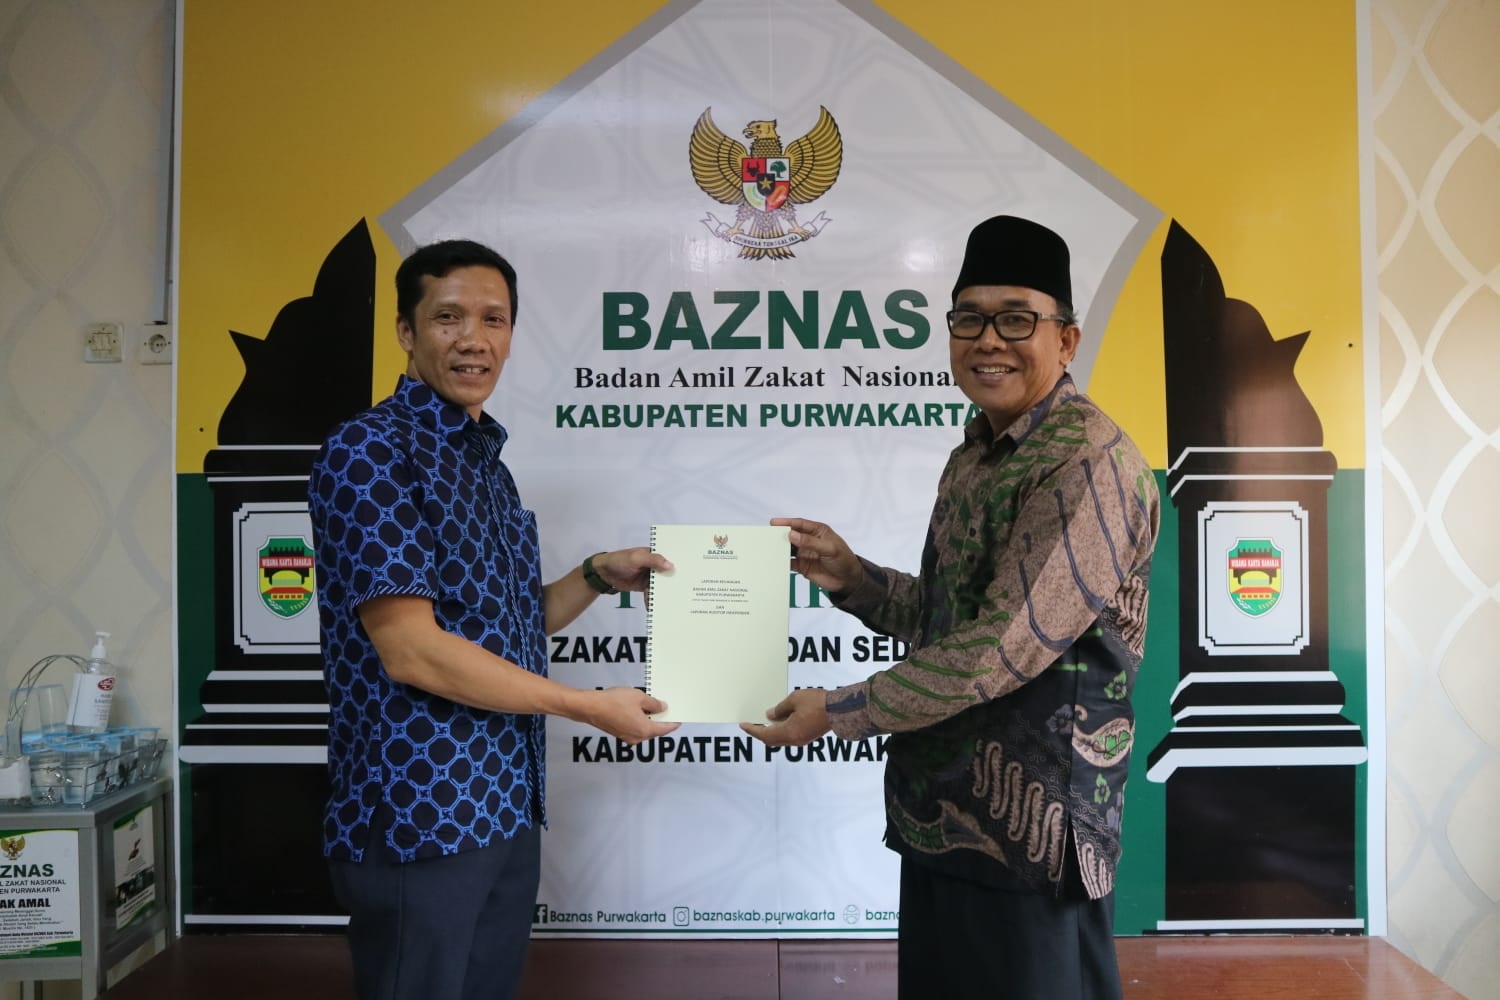 Badan Amil Zakat Nasional (Baznas) Kabupaten Purwakarta Raih WTP Tujuh Tahun Berturut-turut